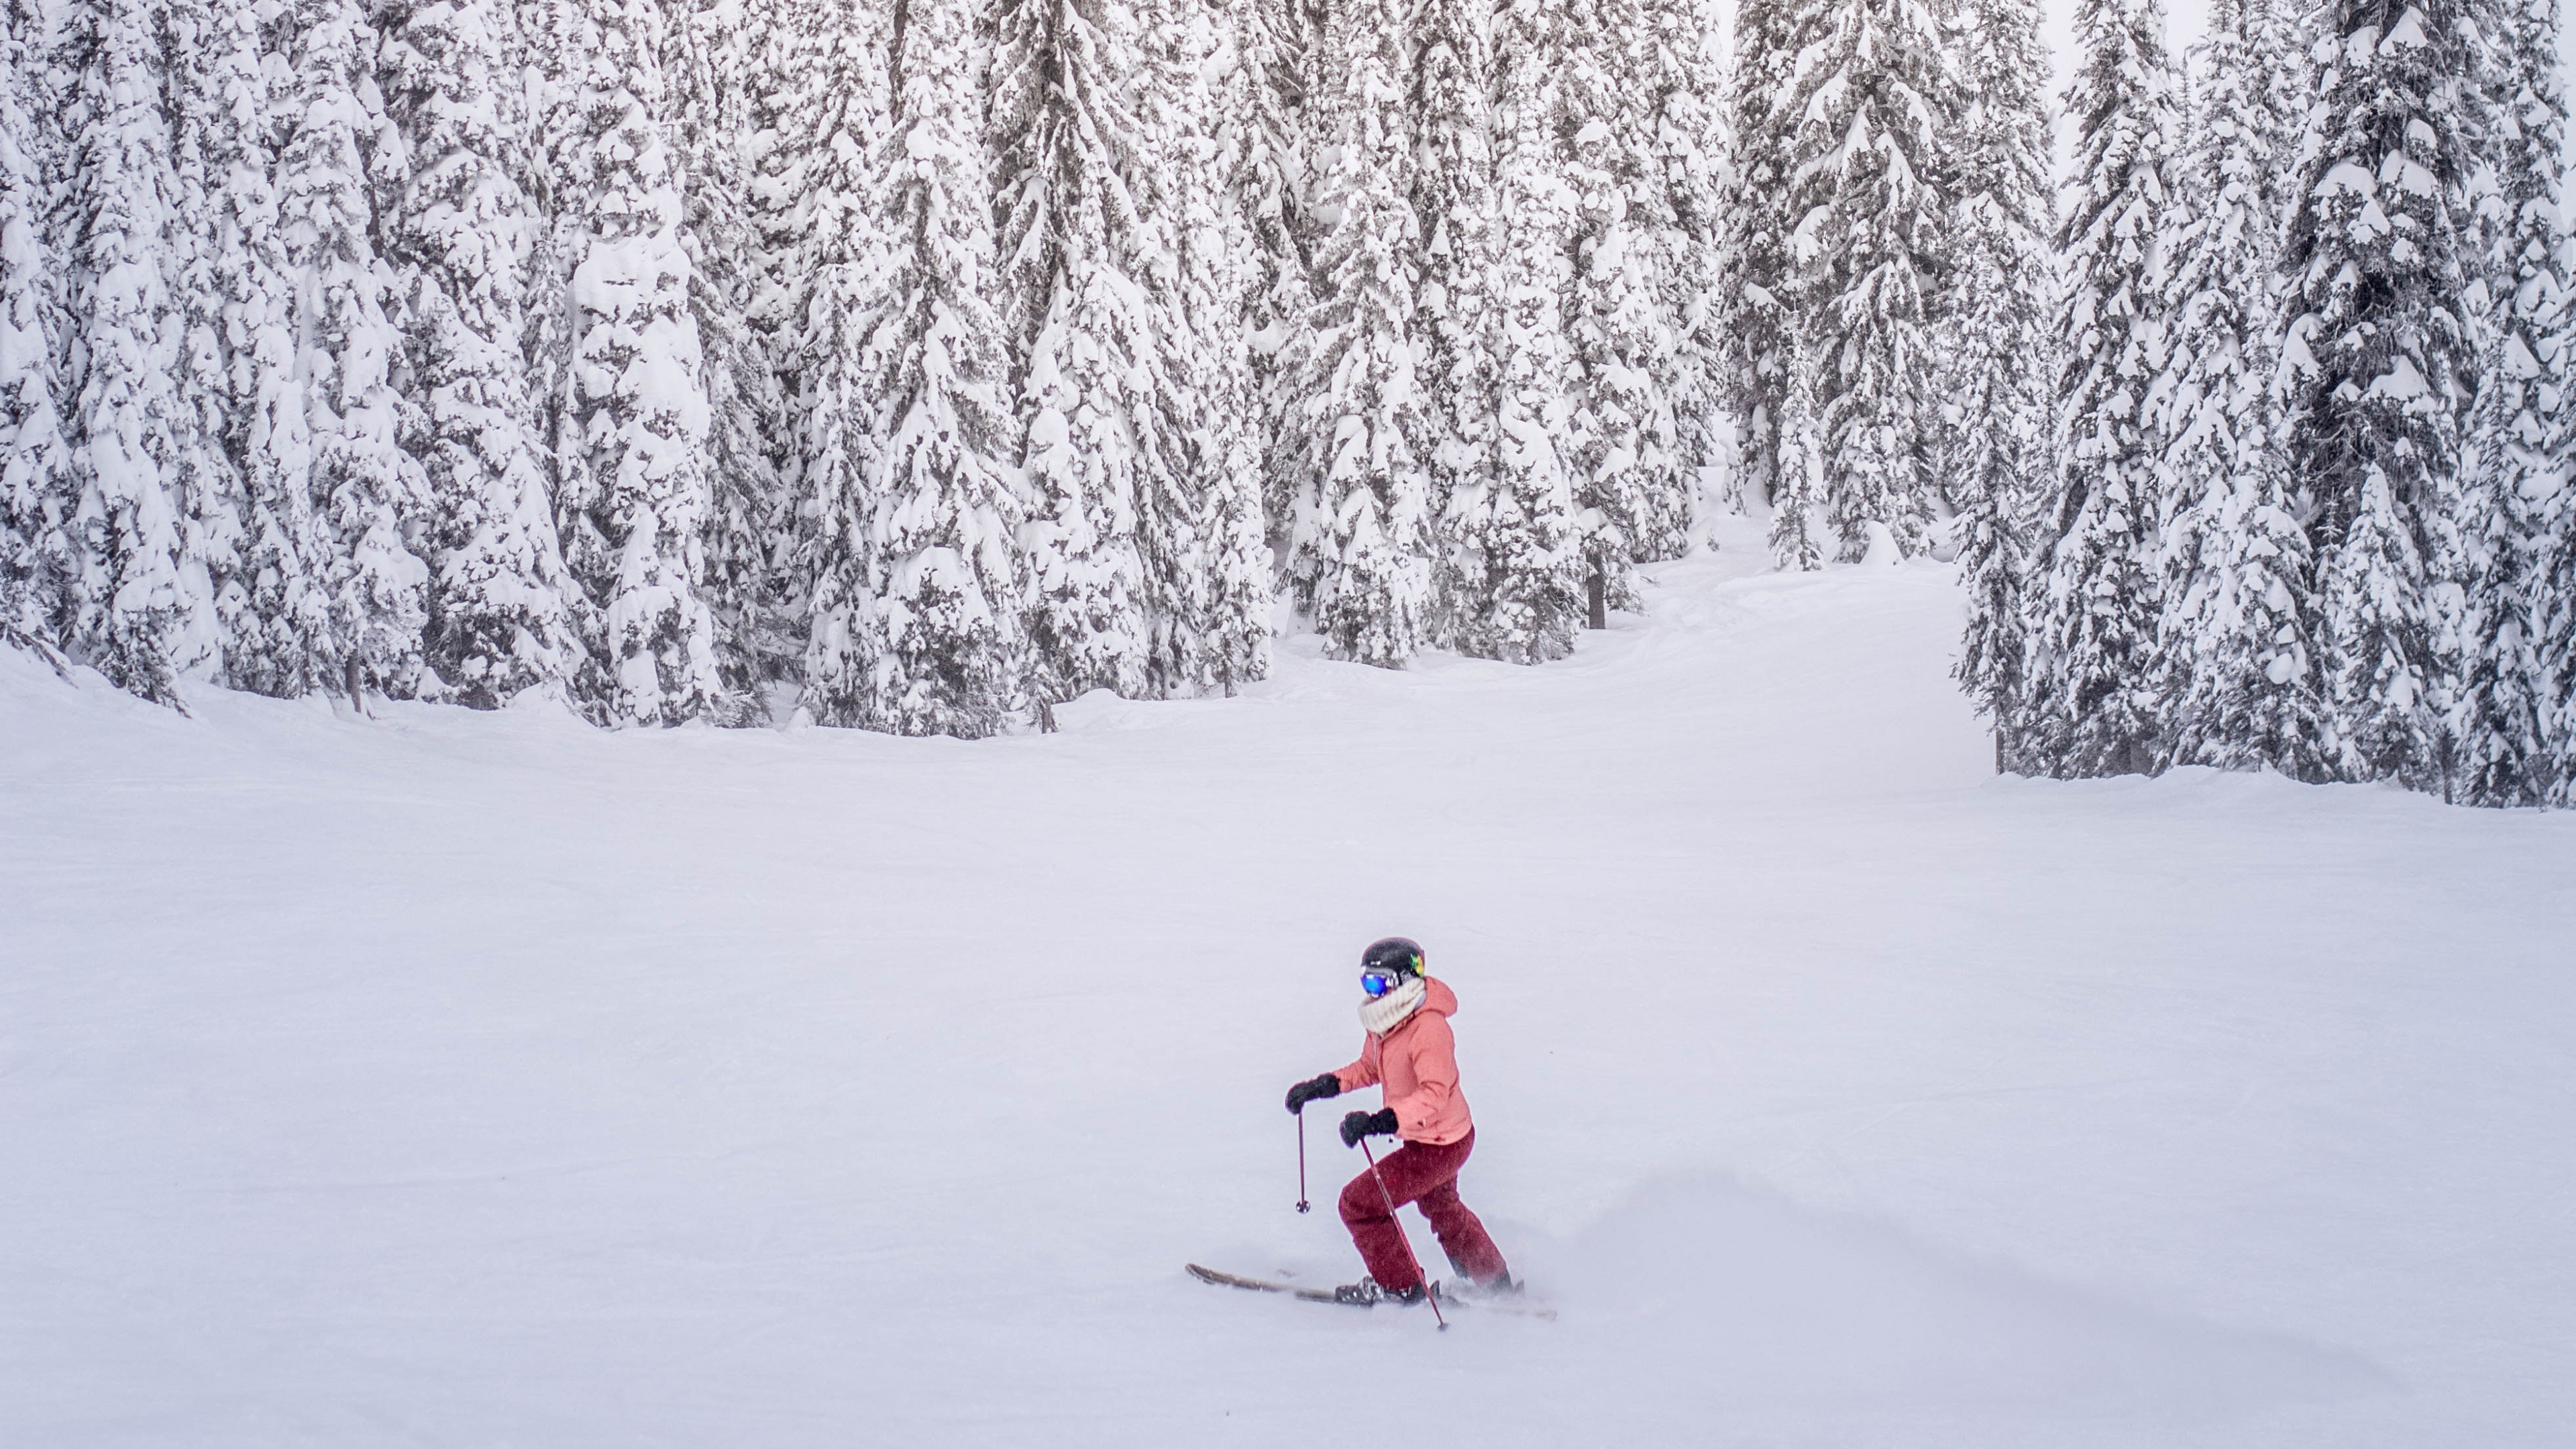 阿斯彭, 高山滑雪, 冬天, 住宿, 白色 壁纸 3840x2160 允许